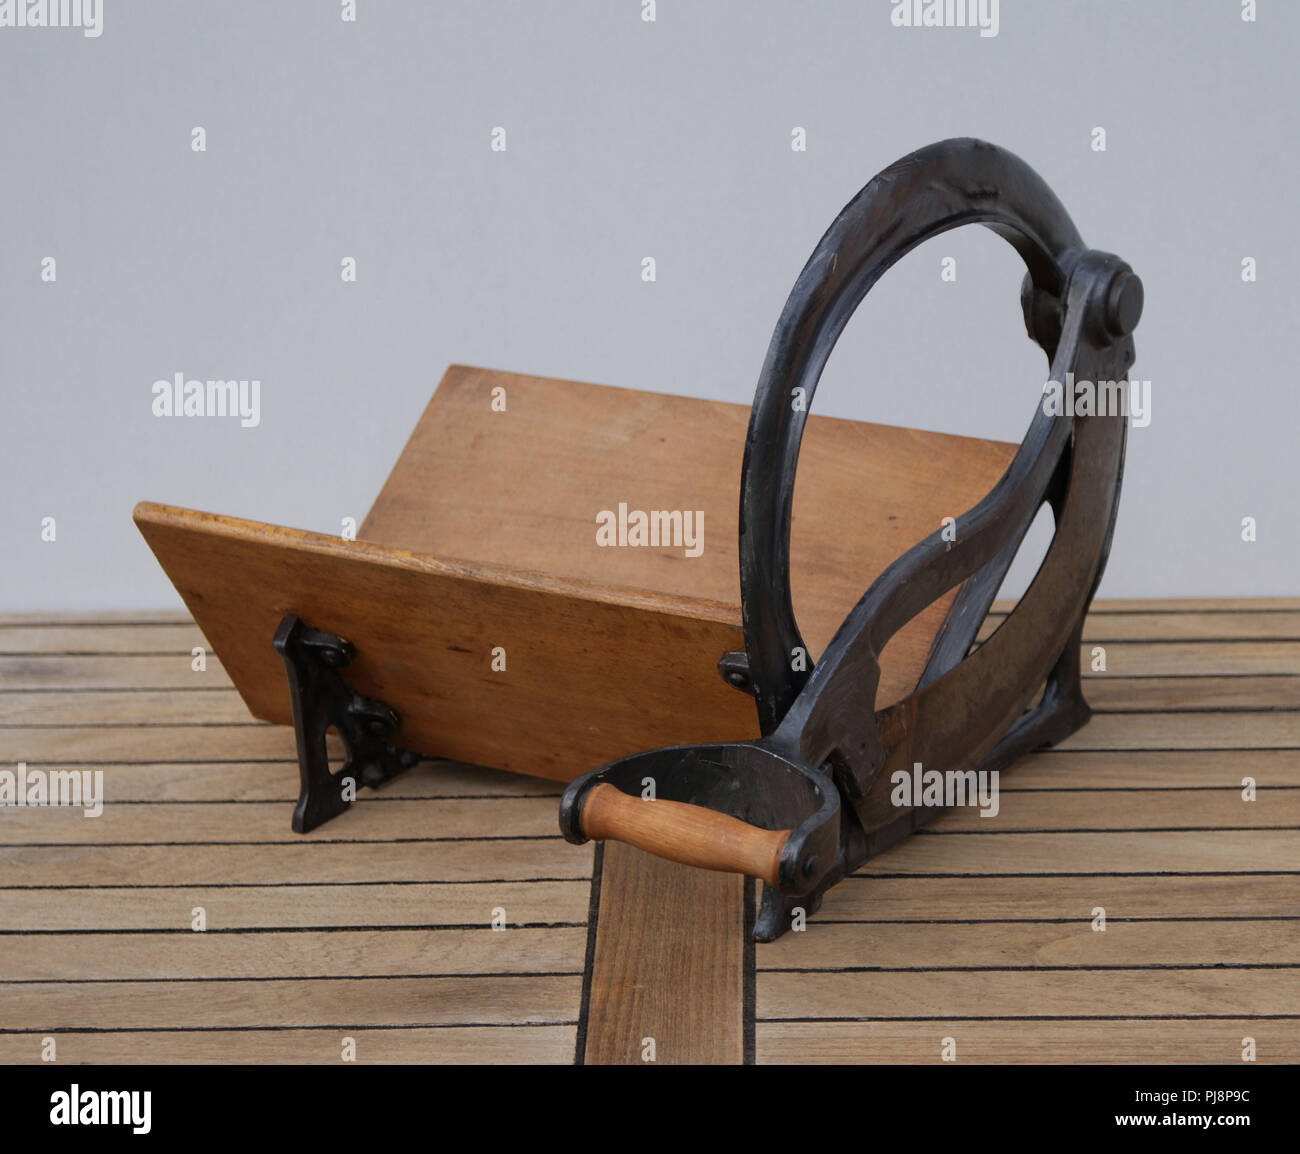 Alte hölzerne Hand Brotschneidemaschine mit Messer Stockfotografie - Alamy